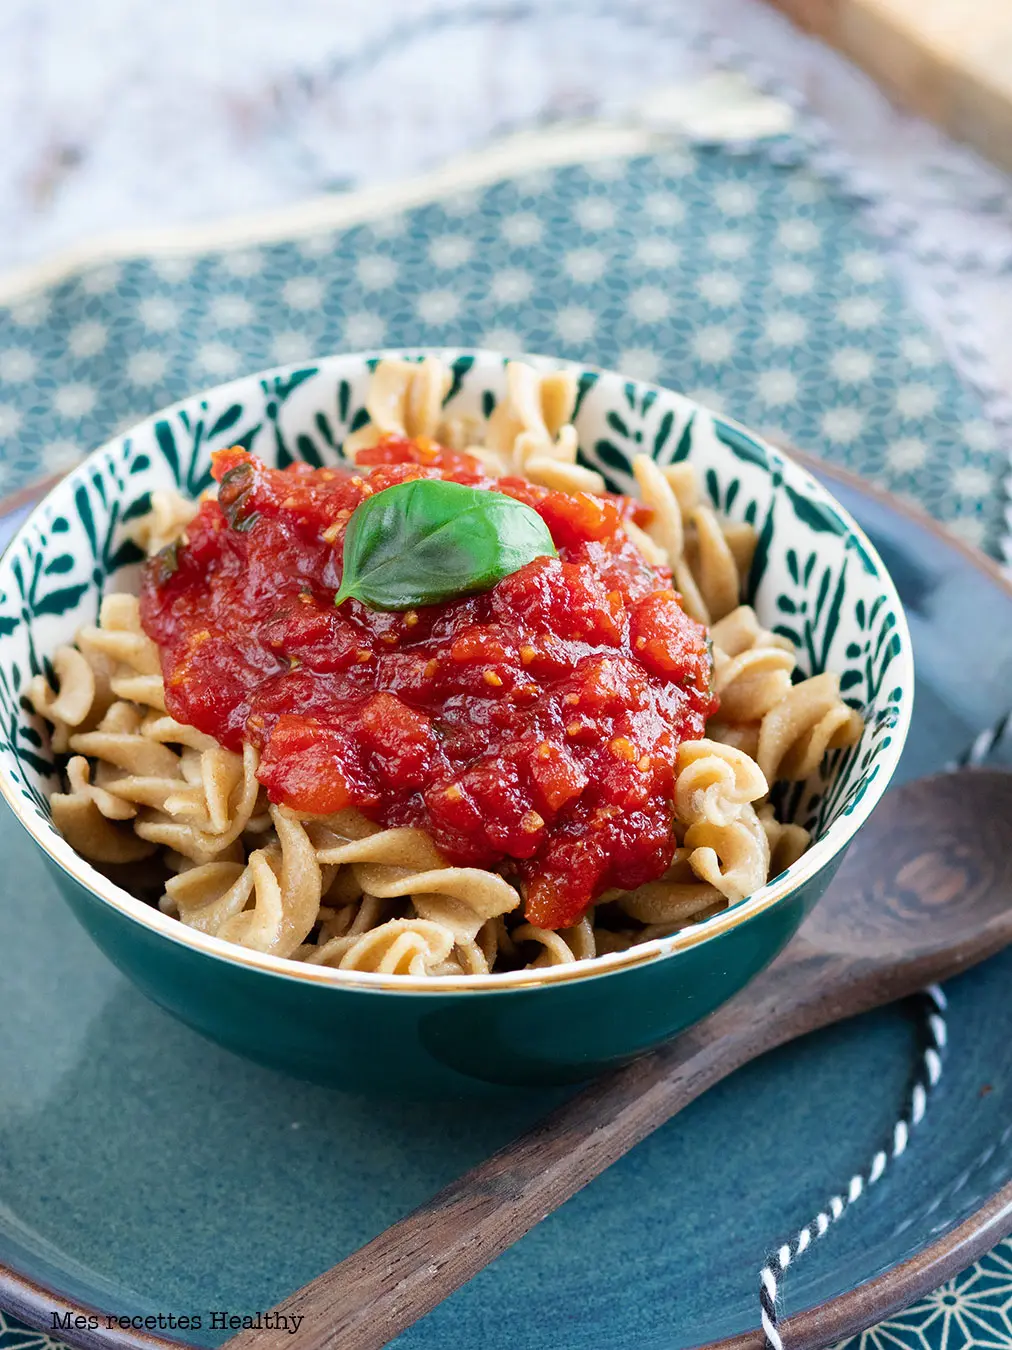 Sauce tomate fraiche rapide : découvrez les recettes de cuisine de